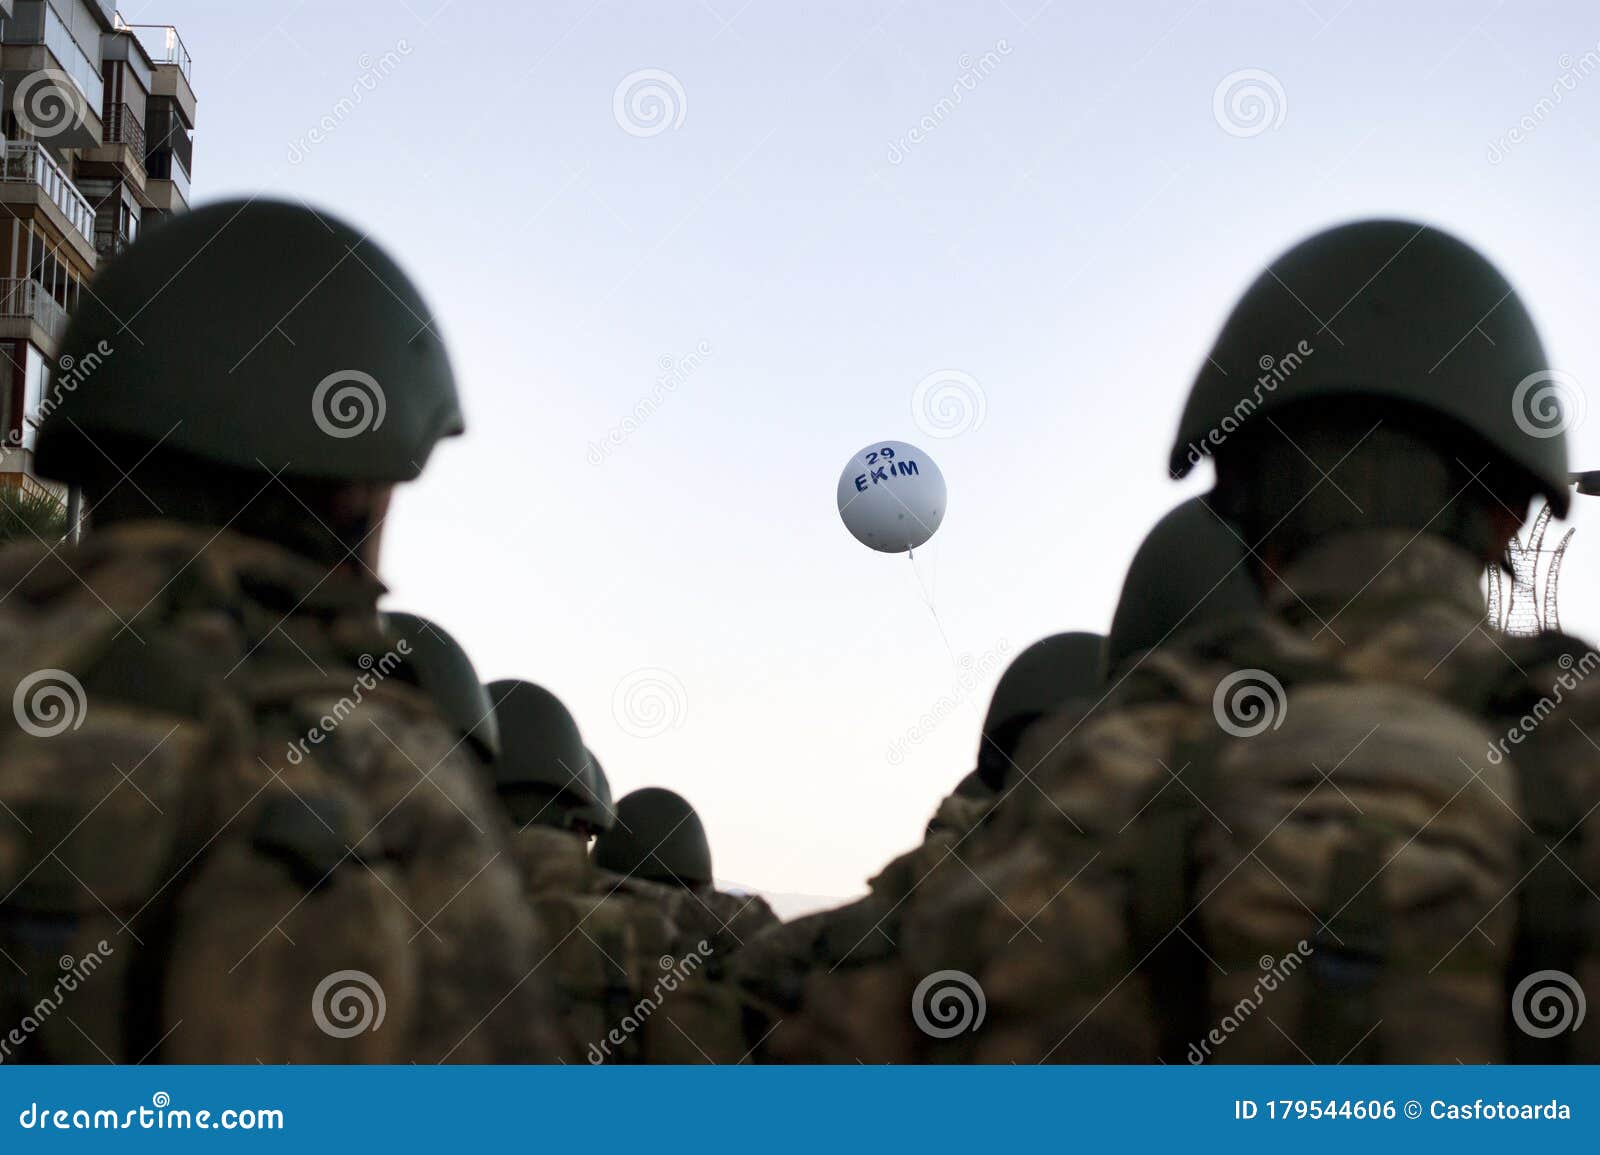 热气球 土耳其 火鸡 气球图片下载 - 觅知网